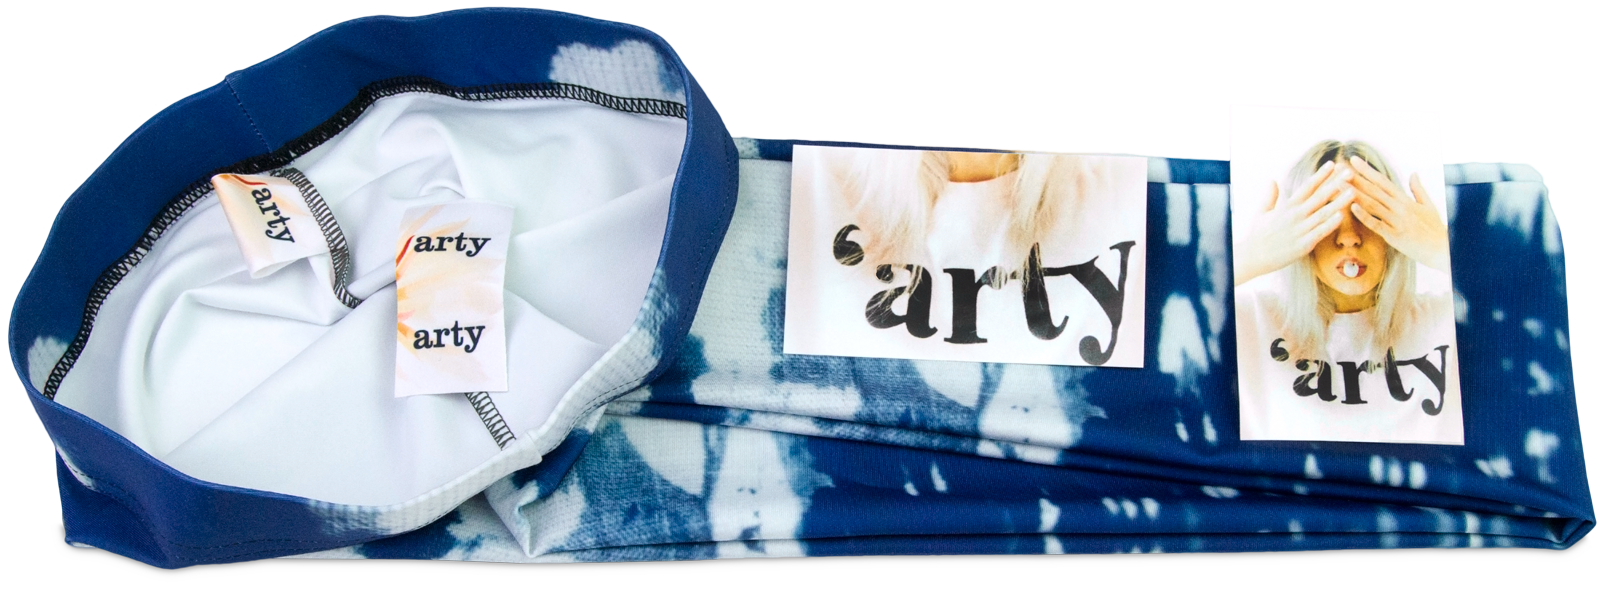 Wrap skirt branding options